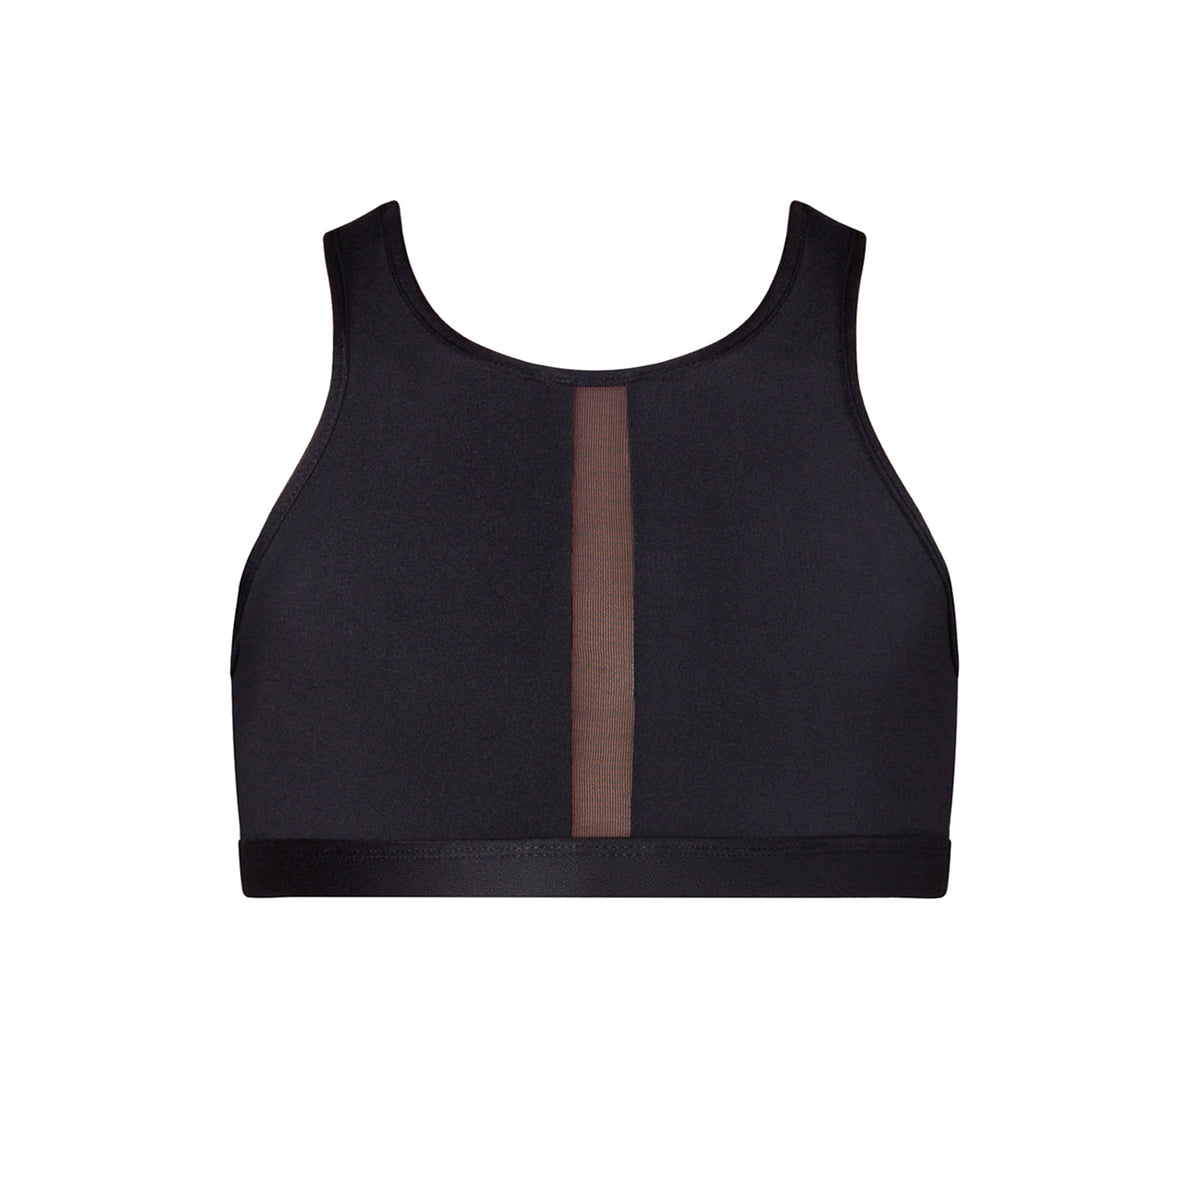 Tate Panelled Crop Top - Black Energetiks Dancewear